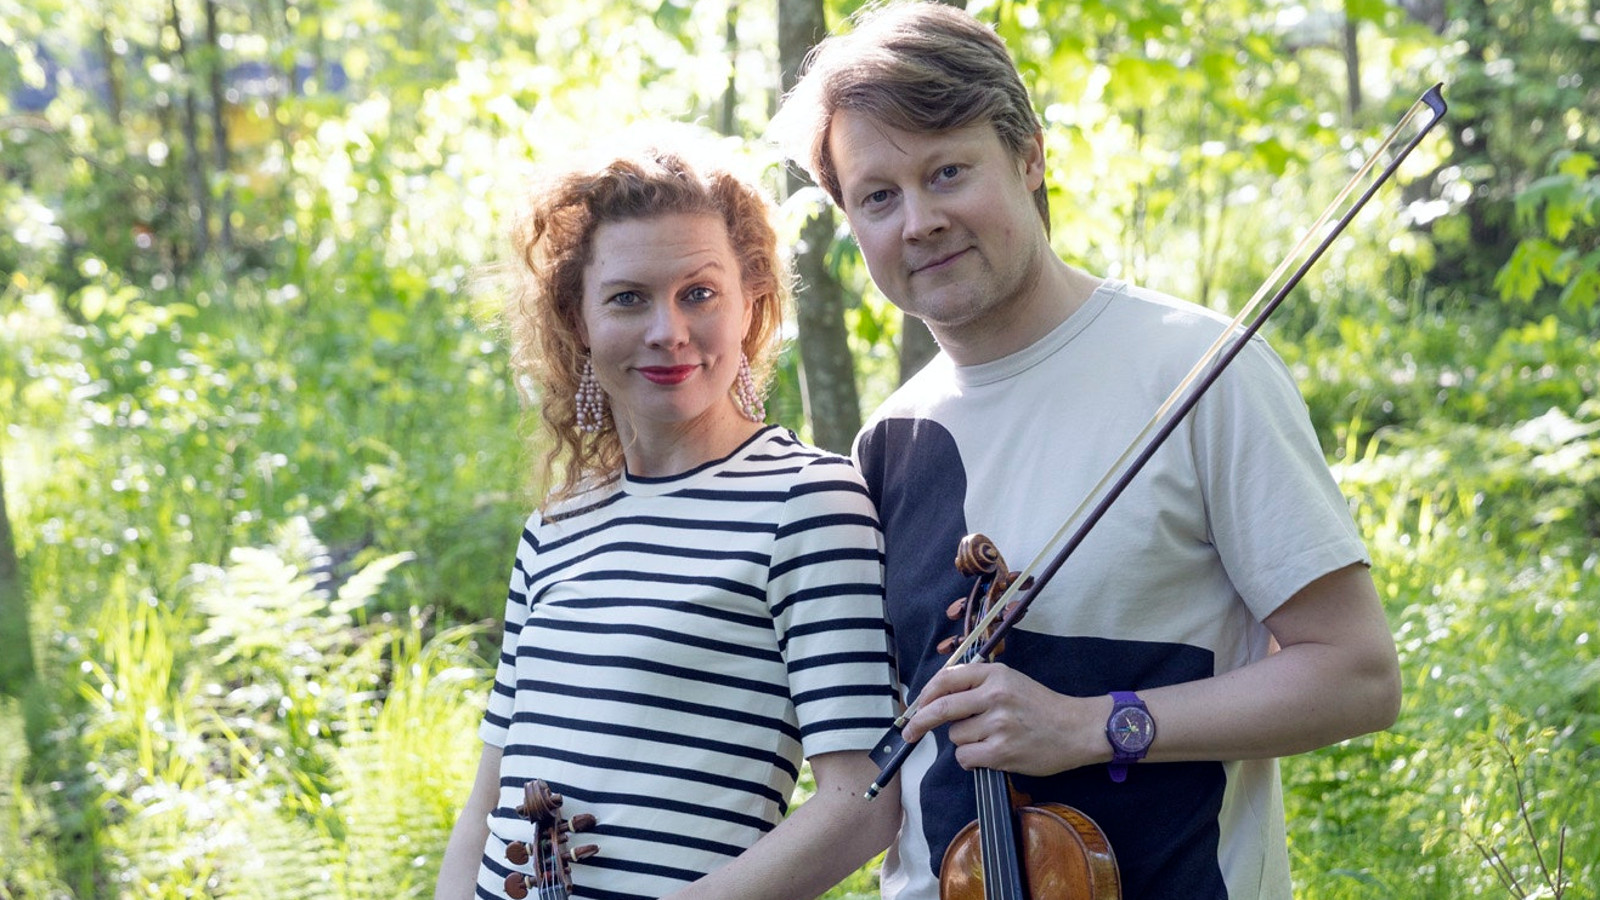 Kuvassa ovat Minna Pensola musta-valko raidallisessa puserossa ja Antti Tikkanen valkoisessa t-paidassa viulu kädessään.  He ovat lehtomaisessa, vihreässä metsässä.